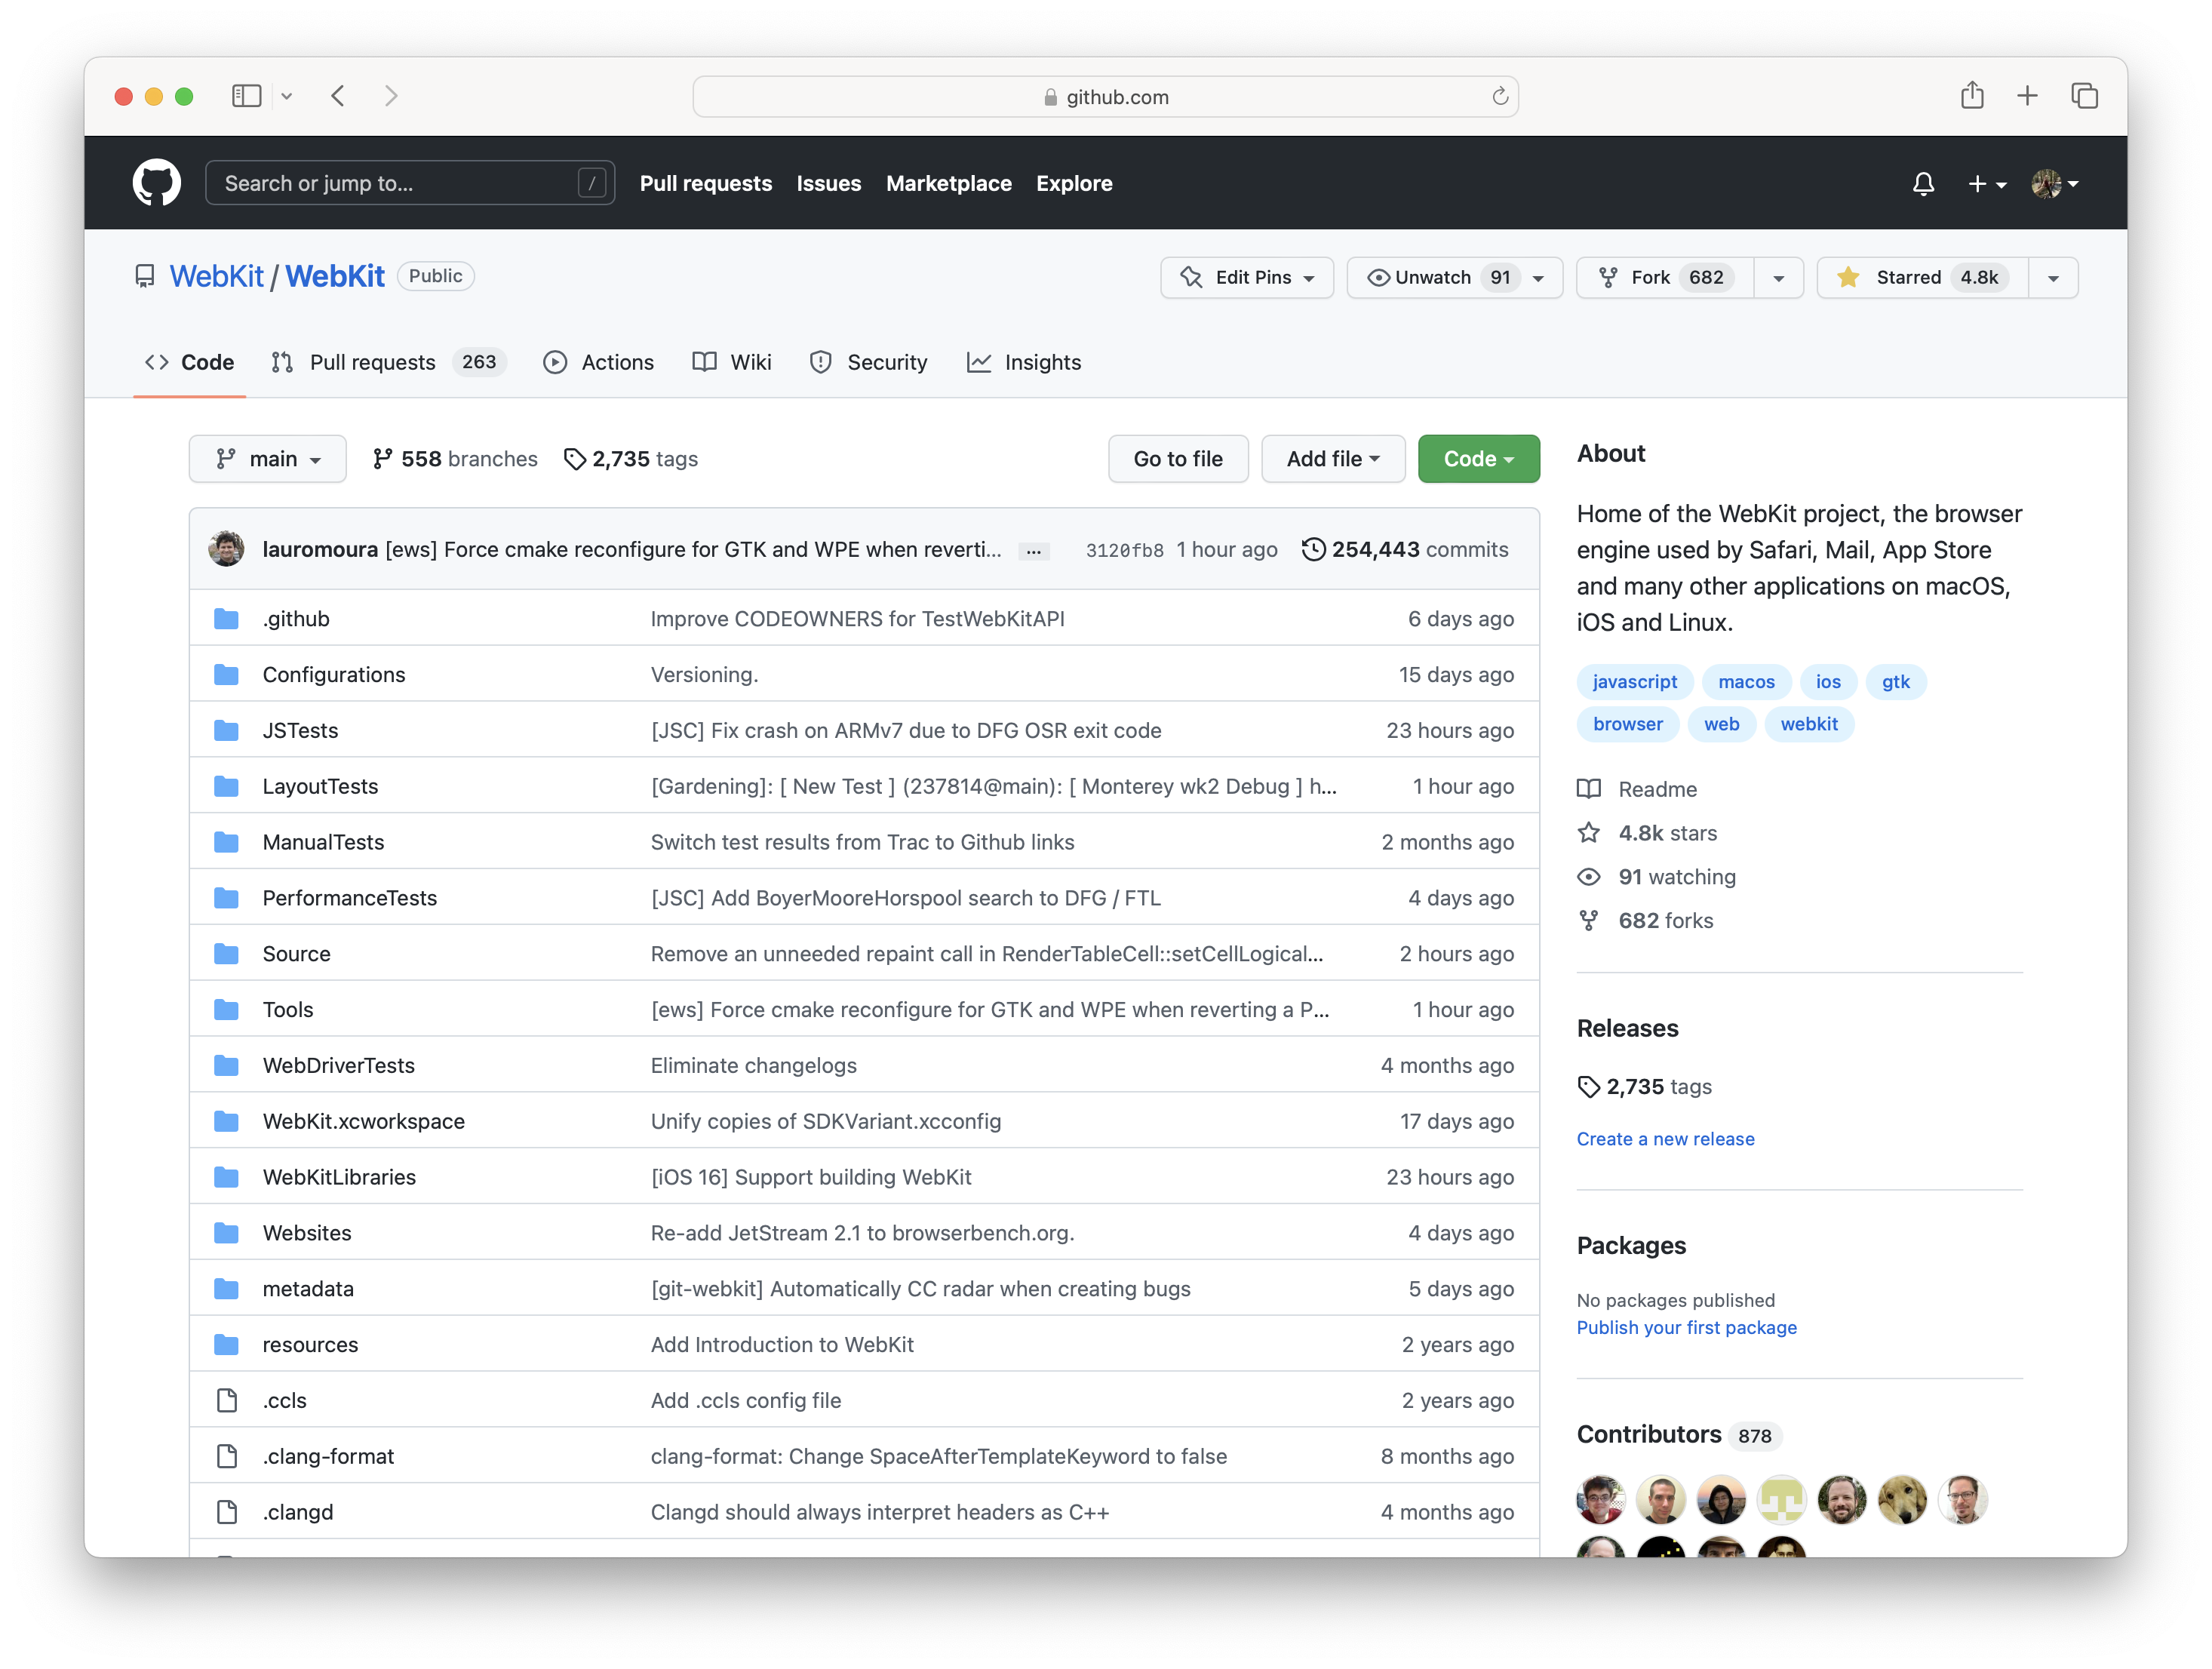 WebKit GitHub Home Page